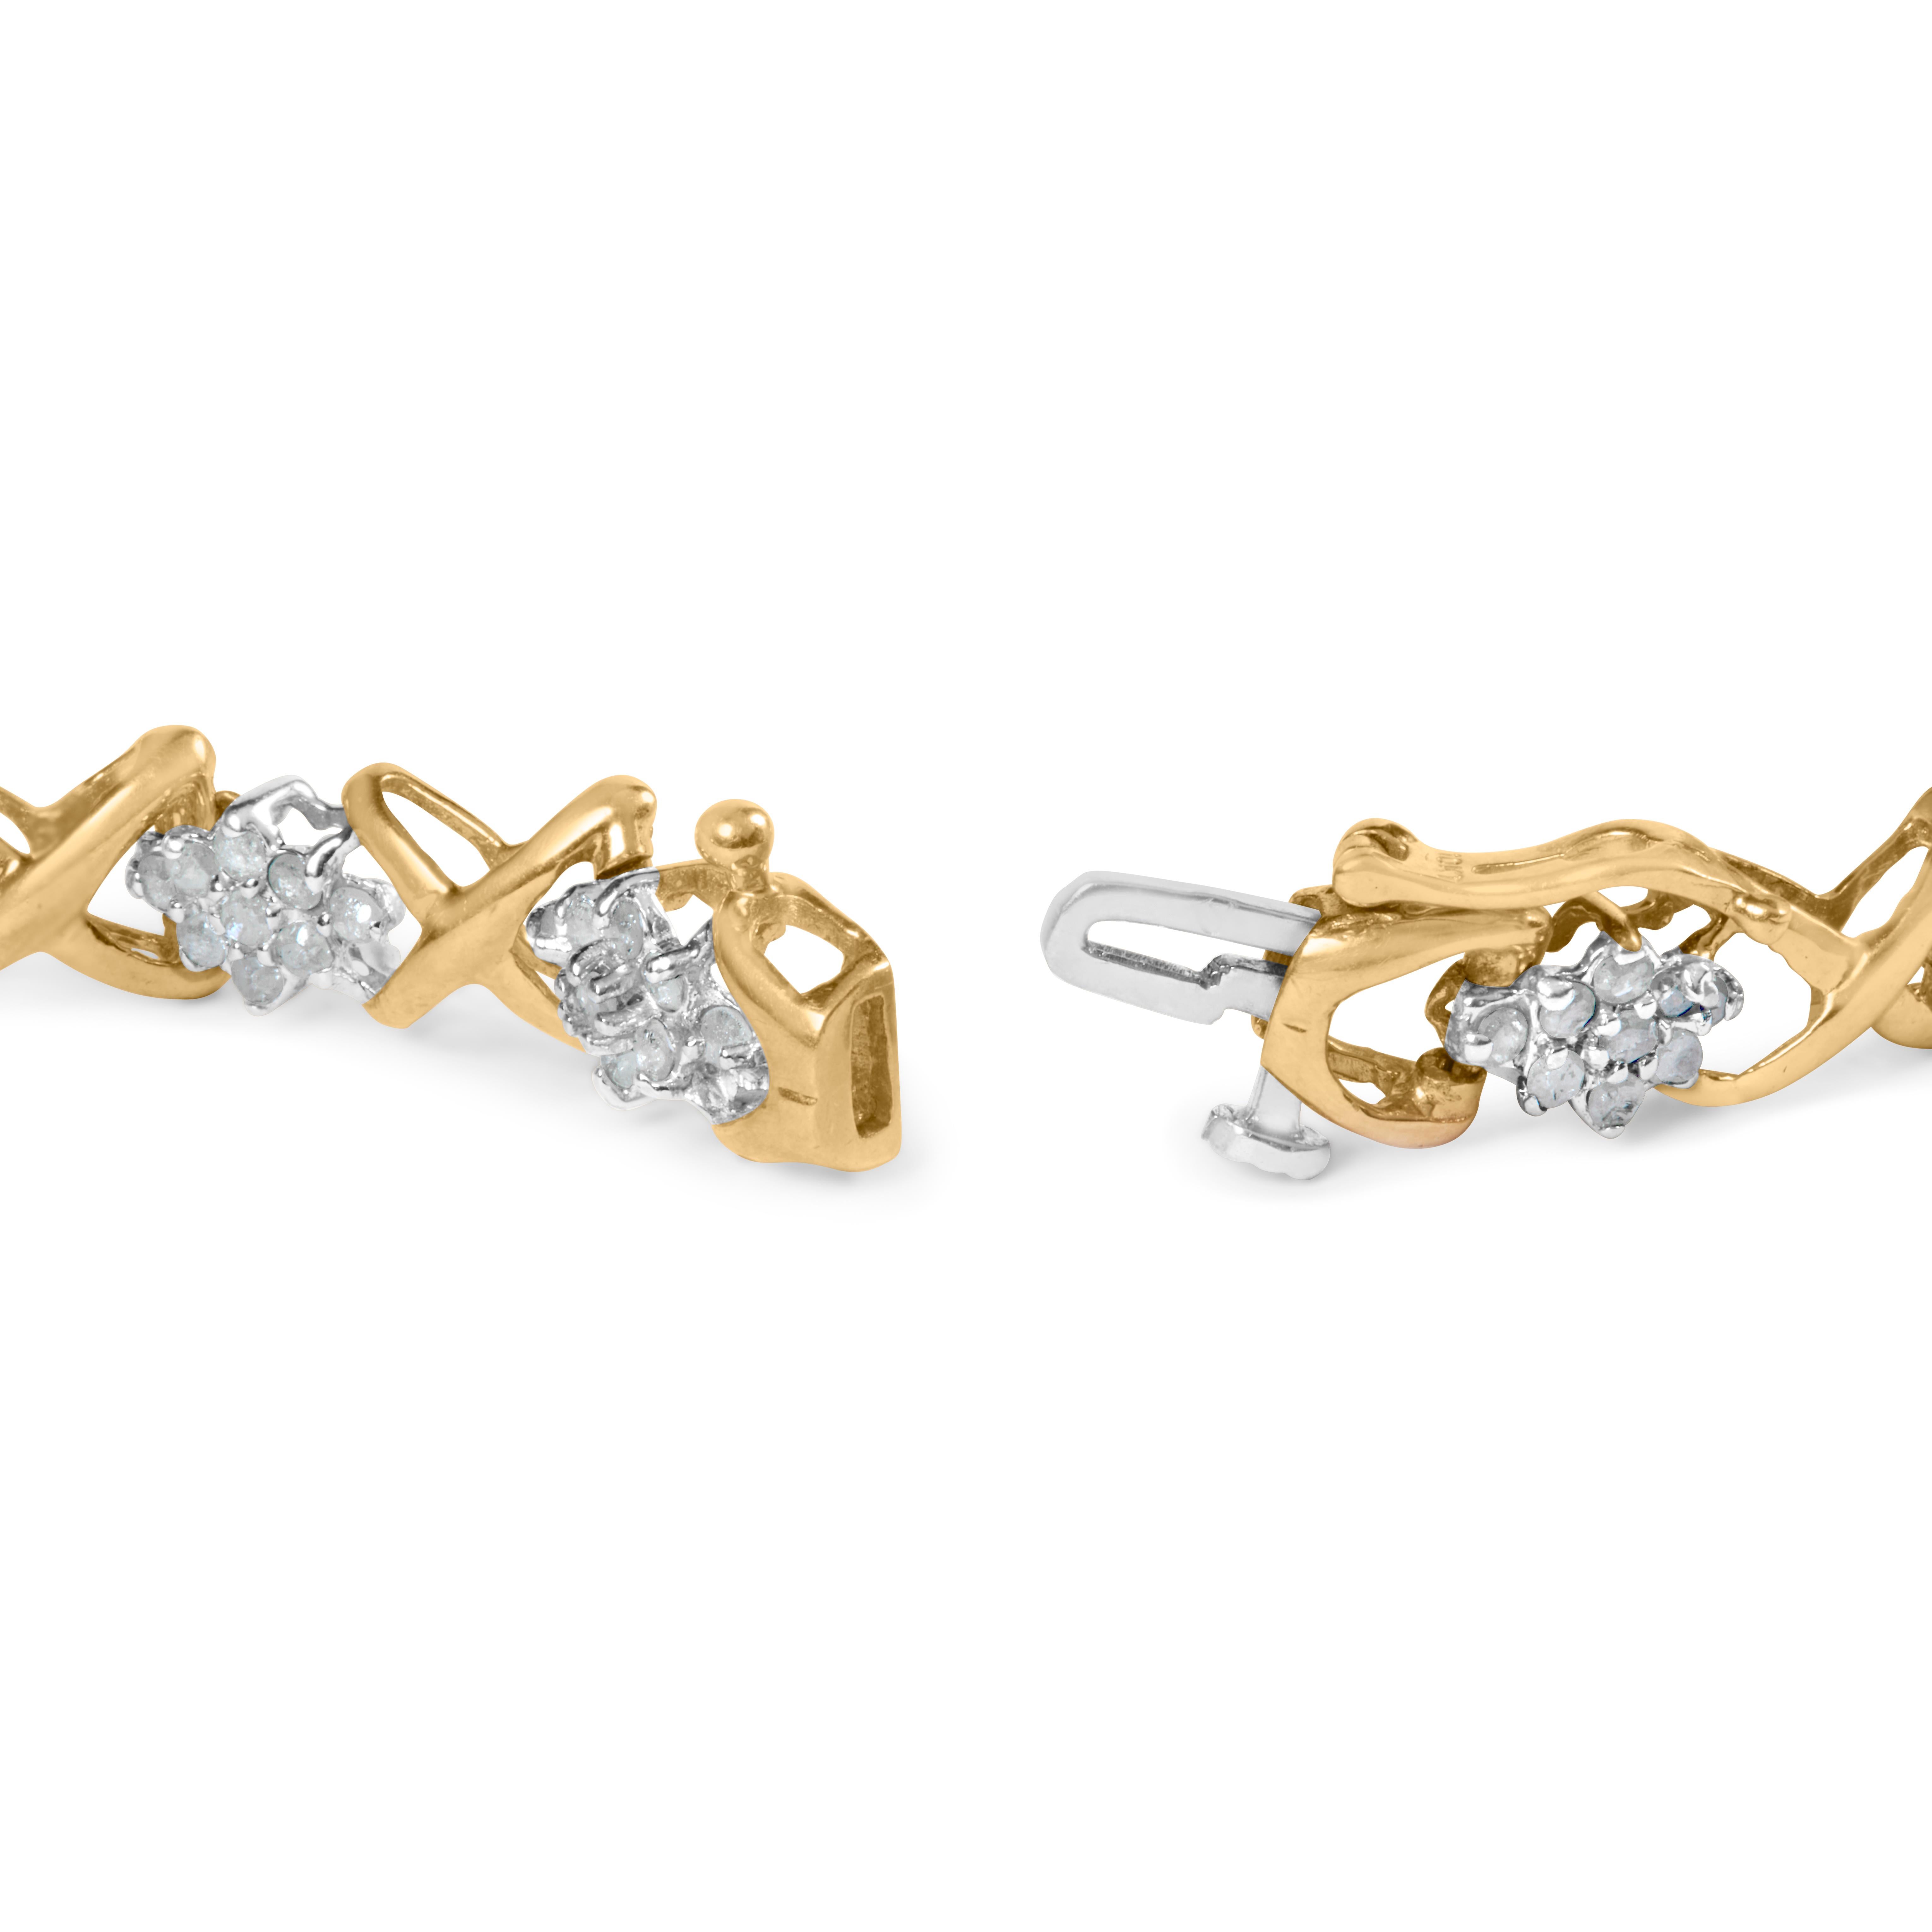 Das perfekte i-Tüpfelchen für jedes elegante Outfit - ein atemberaubendes Diamantarmband. Dieses Armband aus glänzendem, mit 10K Gelbgold plattiertem 925er Sterlingsilber ist mit einer Reihe von Diamanten im Rundschliff von insgesamt atemberaubenden